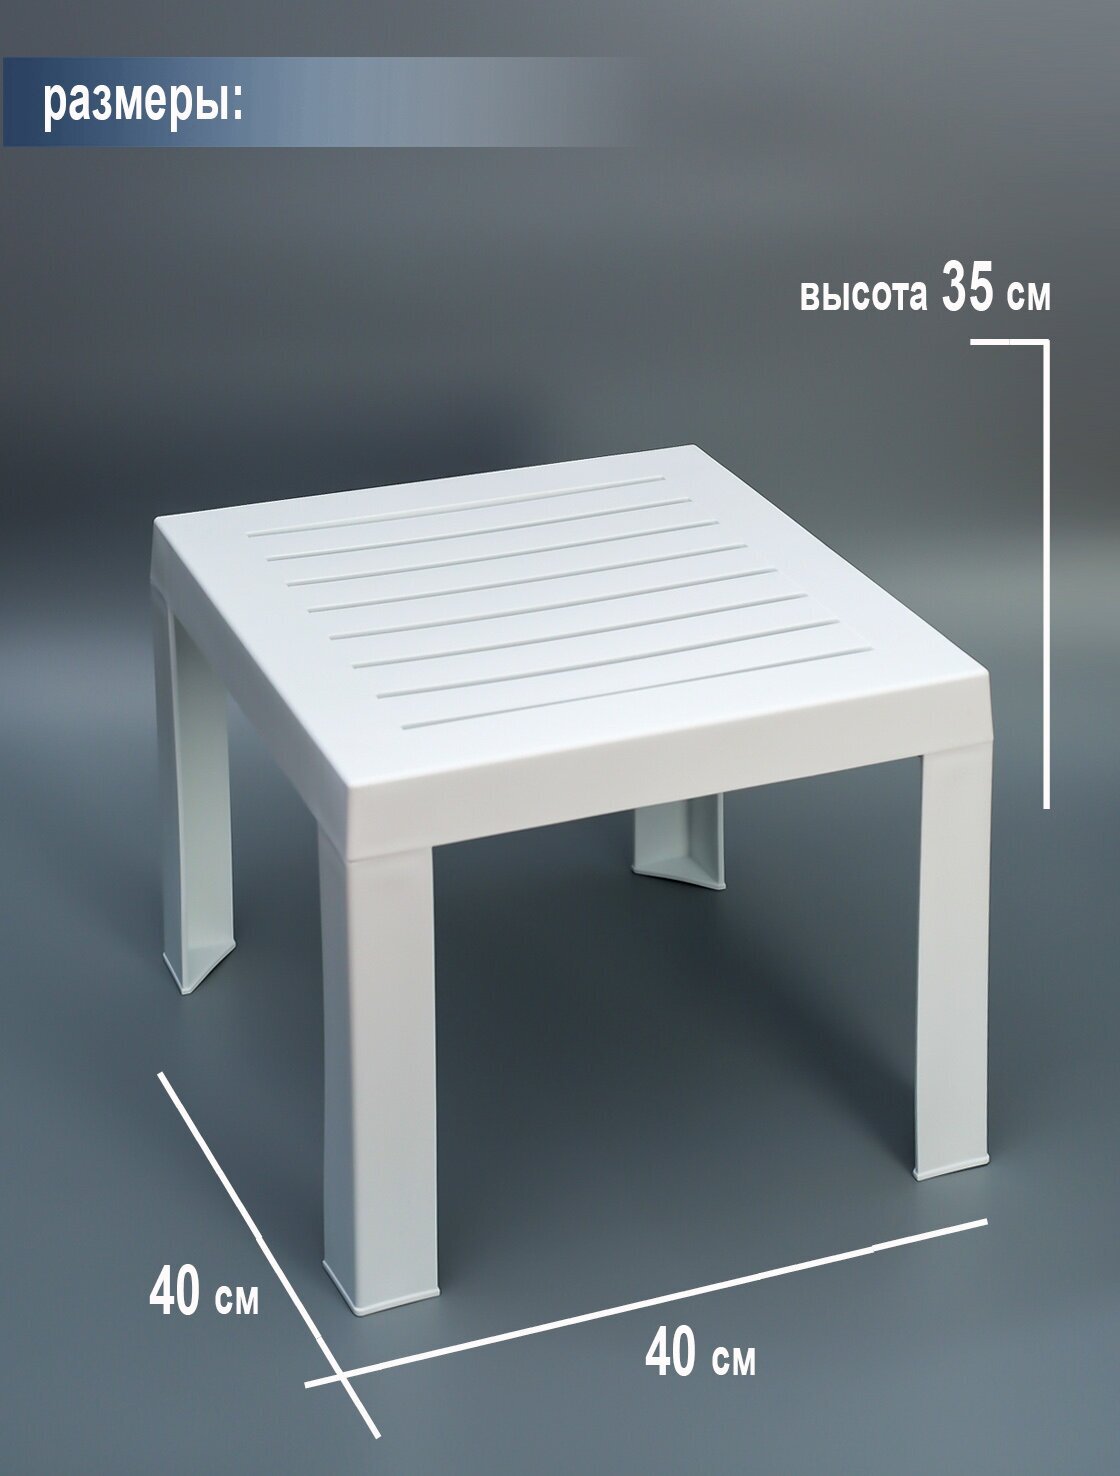 Столик к шезлонгу пластиковый Elfplast размером 35х40х40, практичный садовый столик съемными ножками, белый